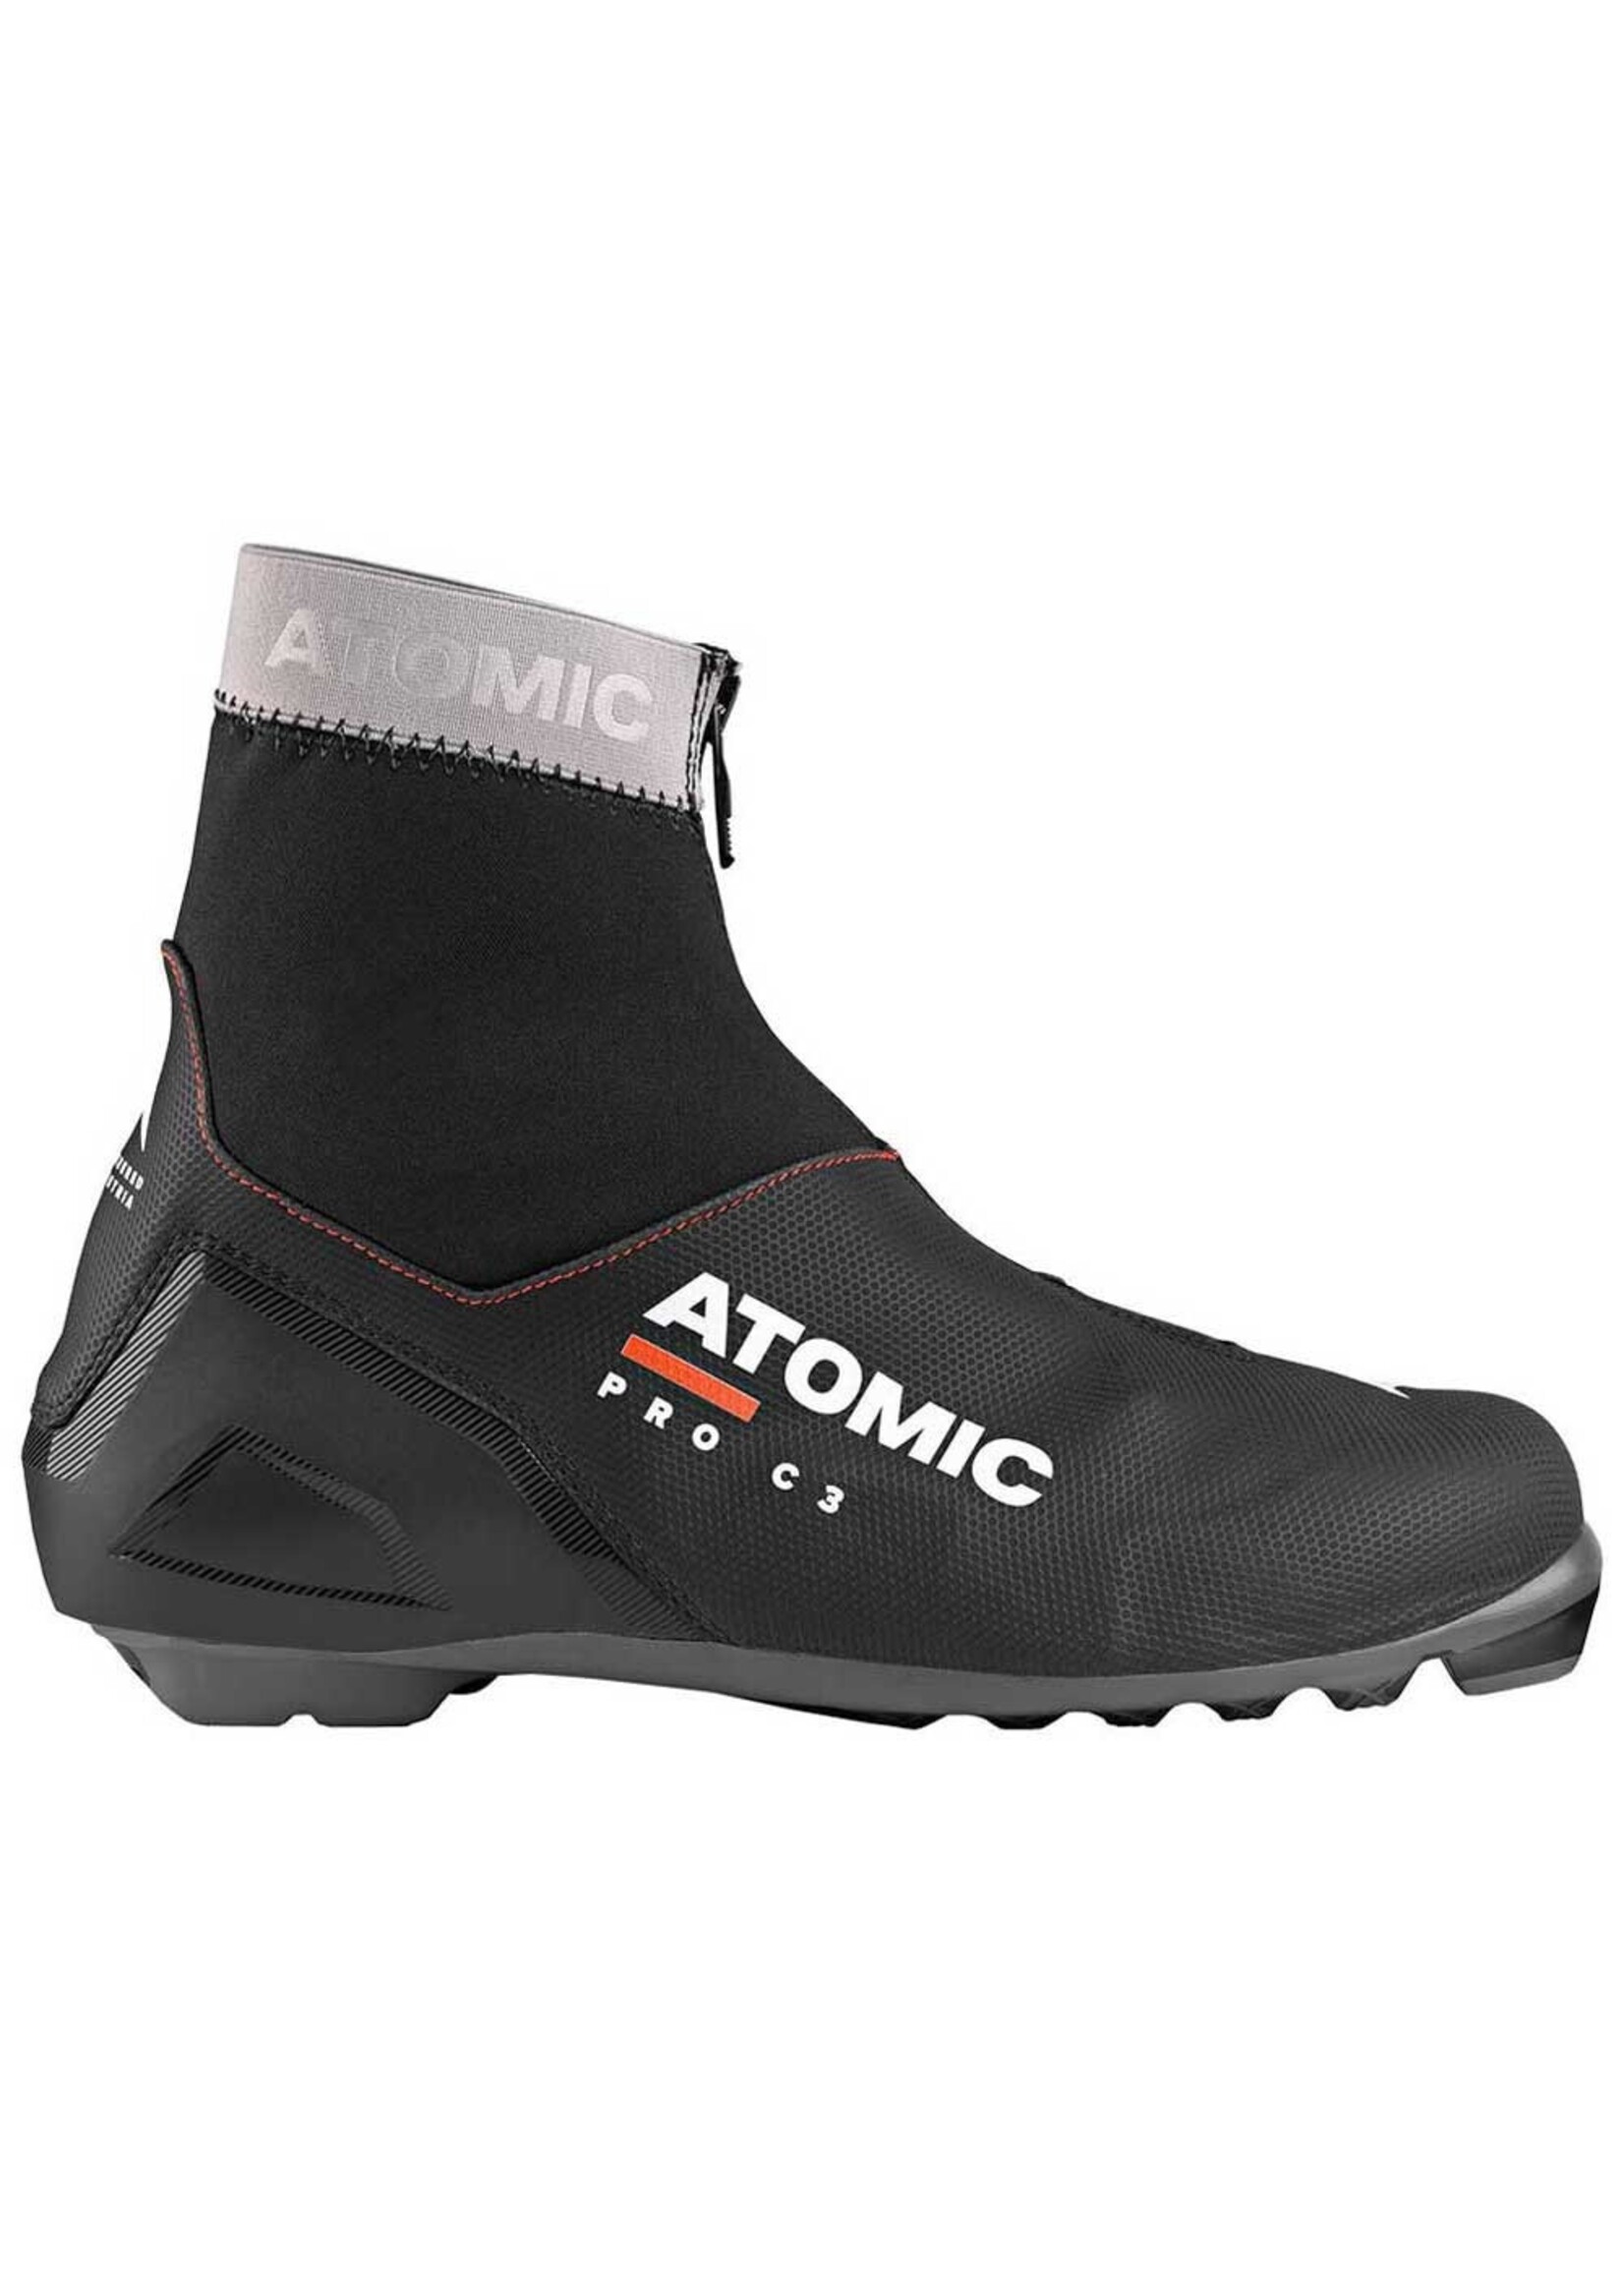 Atomic Atomic Pro C3 Dark Grey/Black 22/23